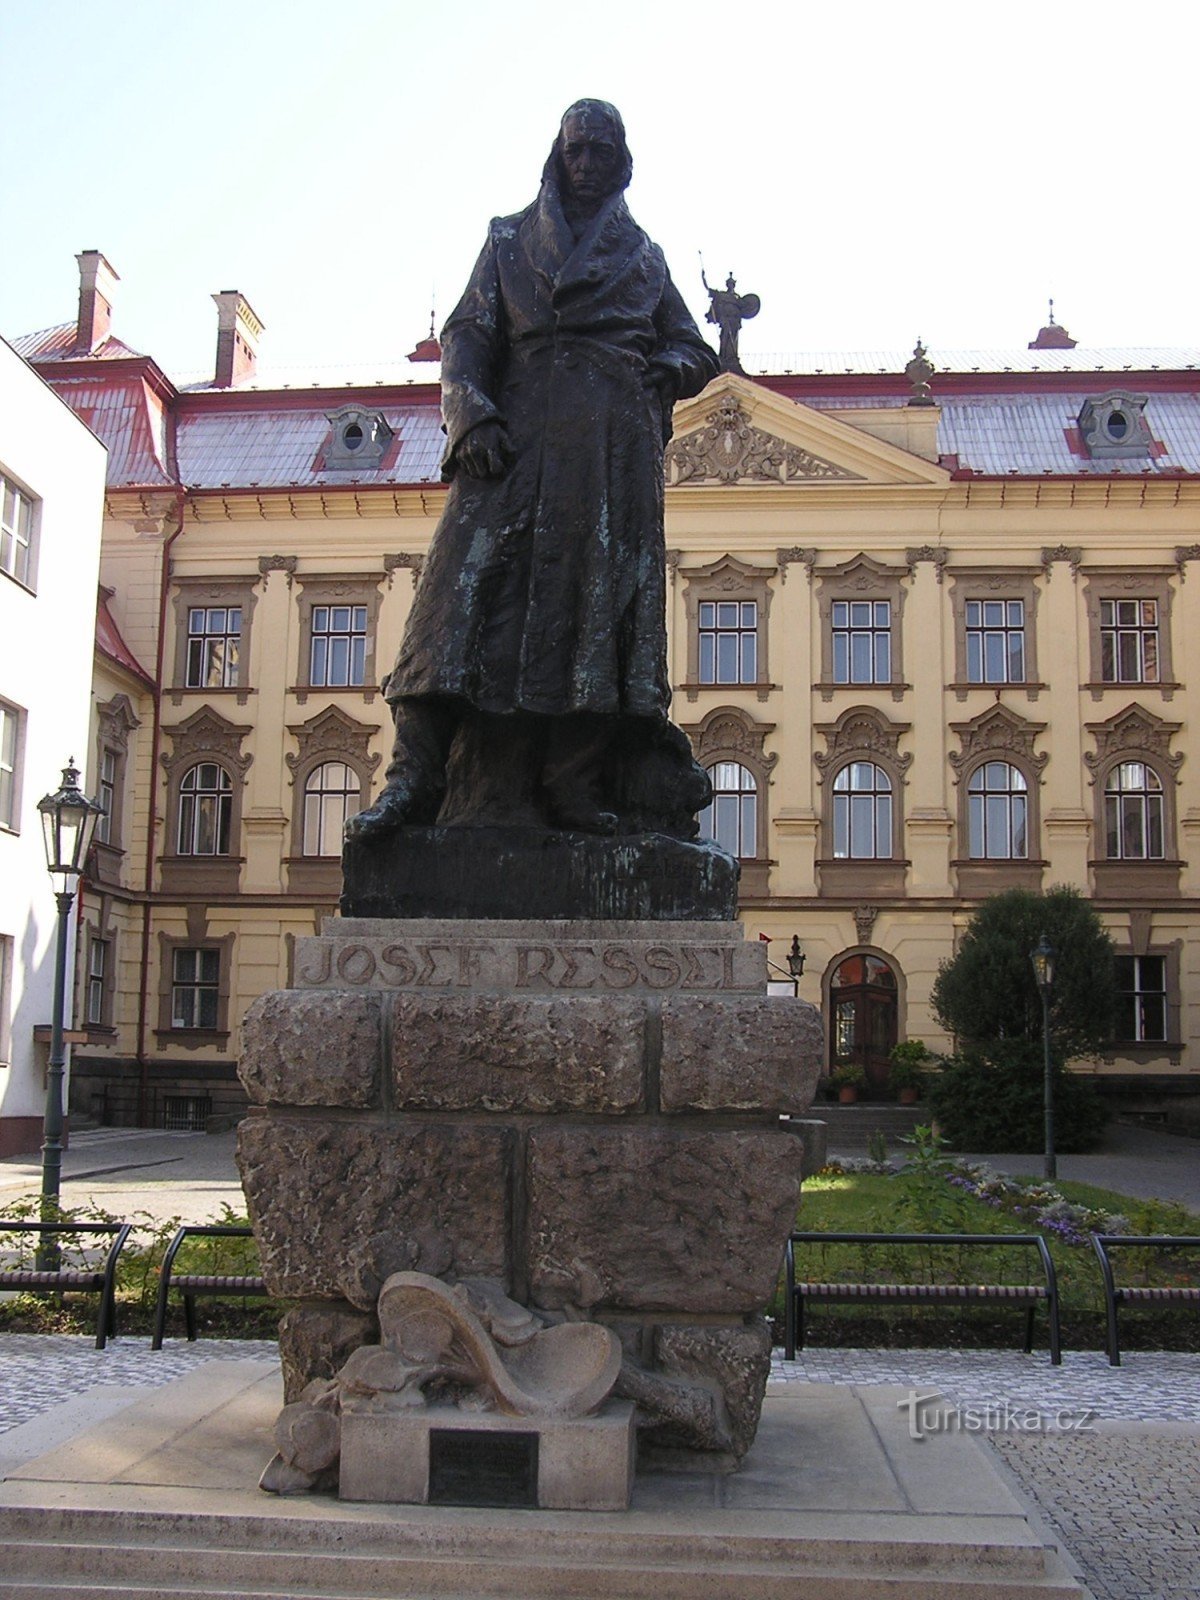 статуя Йозефа Ресселя